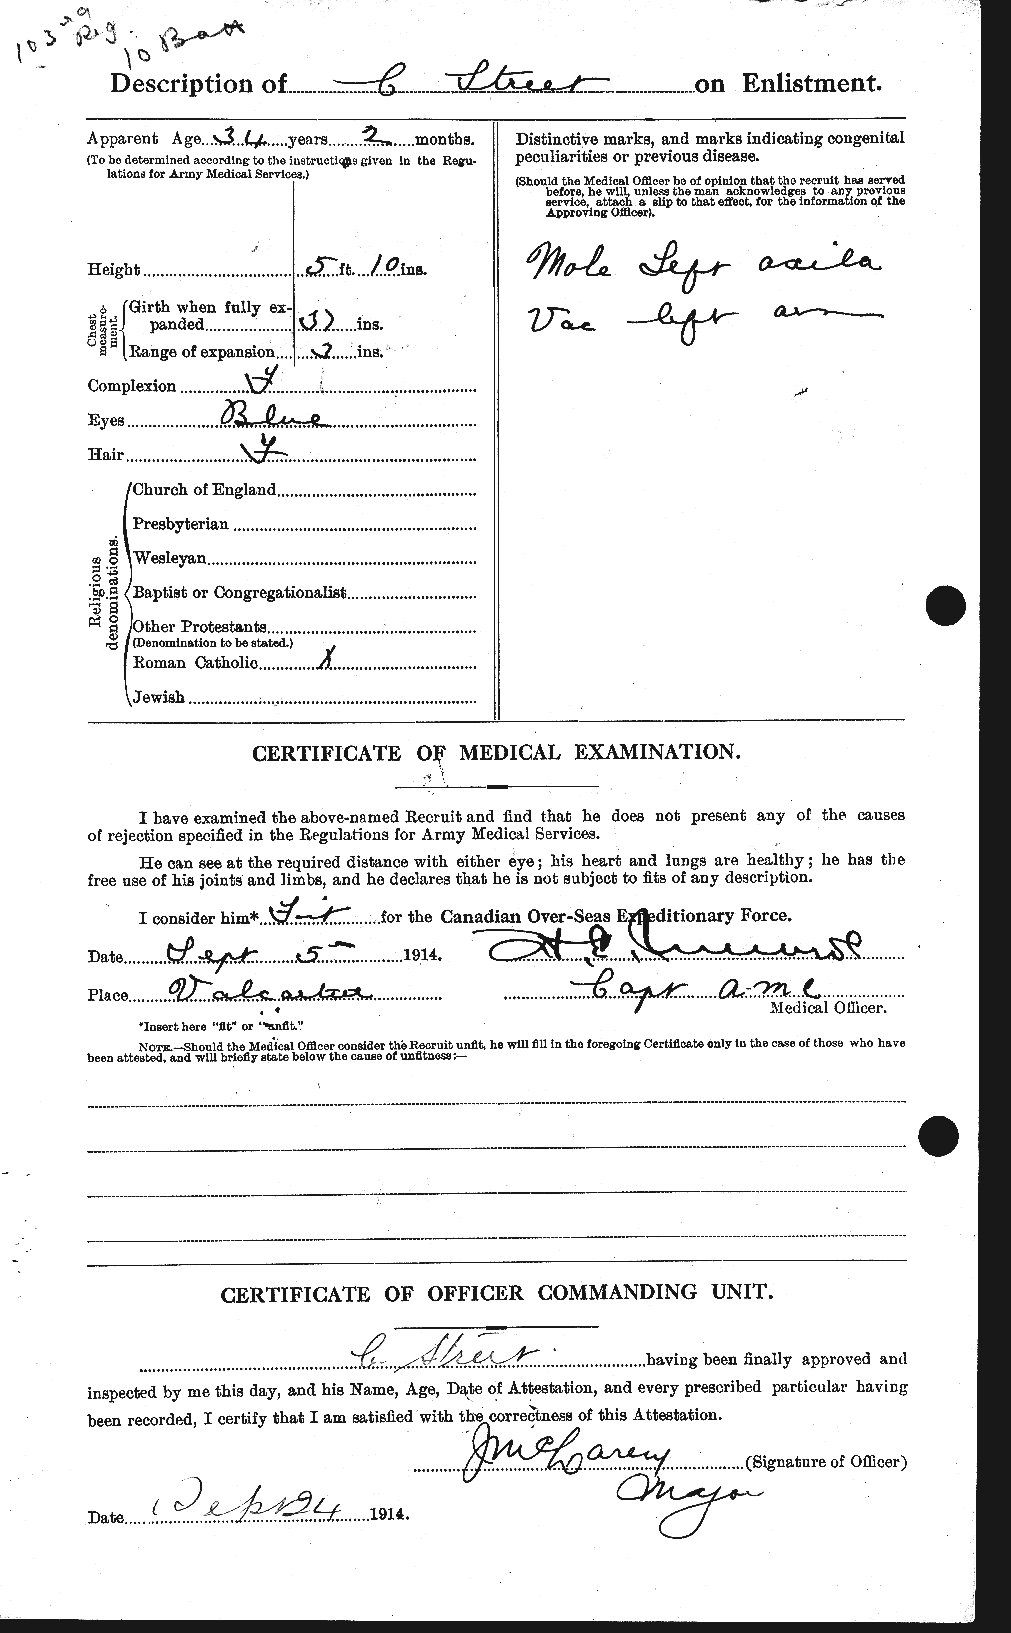 Dossiers du Personnel de la Première Guerre mondiale - CEC 126235b